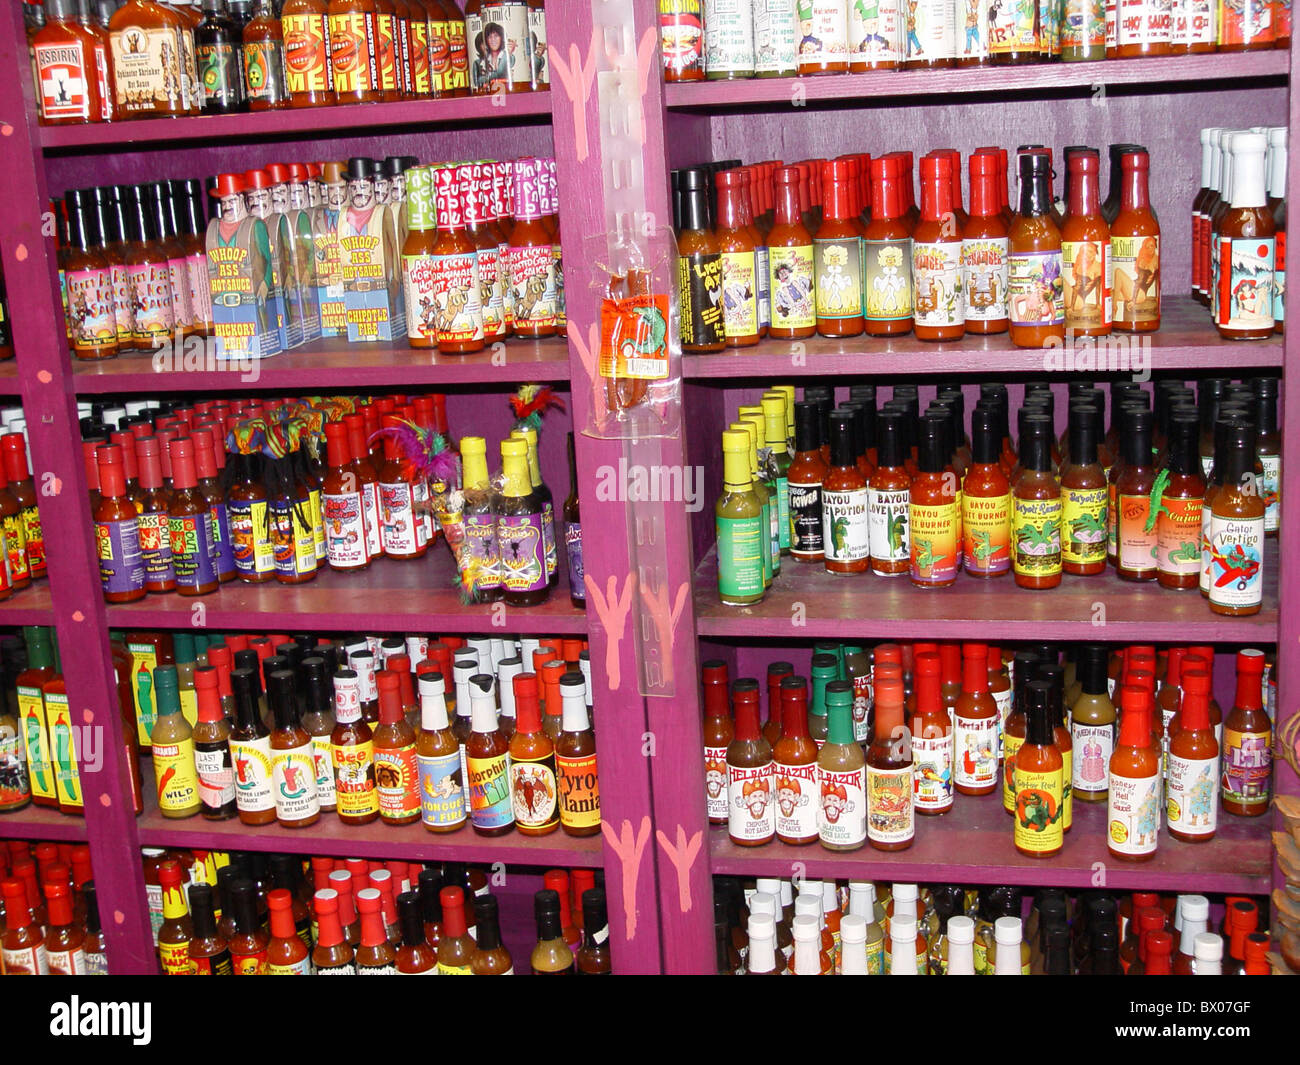 La comida Cajún comiendo alimentos comercial botellas de salsa picante salsa Caribe almacenar alimentos comestibles baja carga Foto de stock